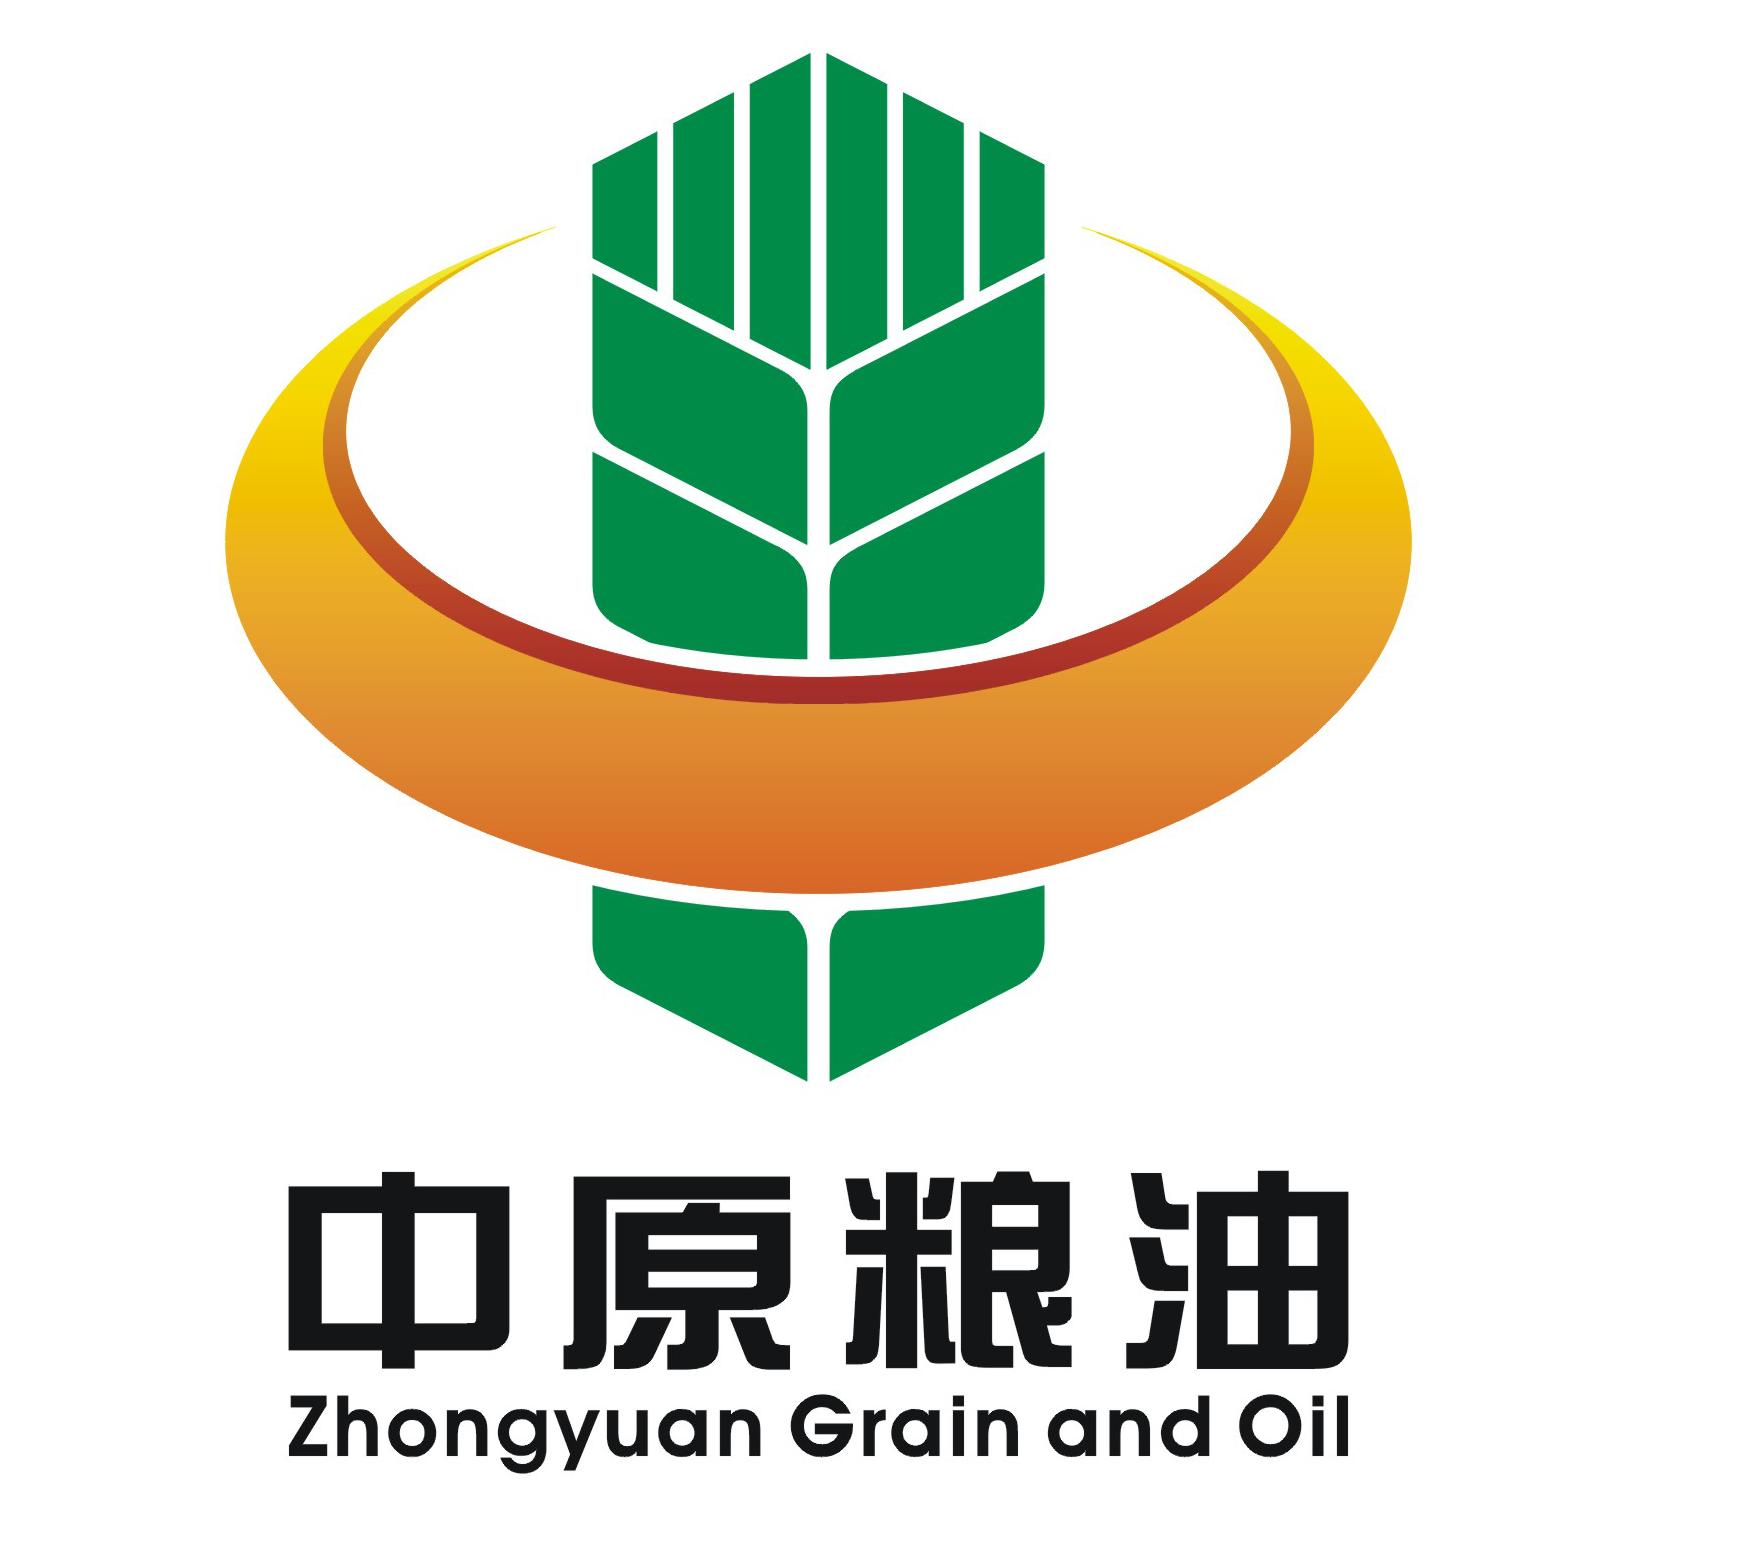 关于河南省粮油区域公共品牌名称、标语和标识征集结果的公示